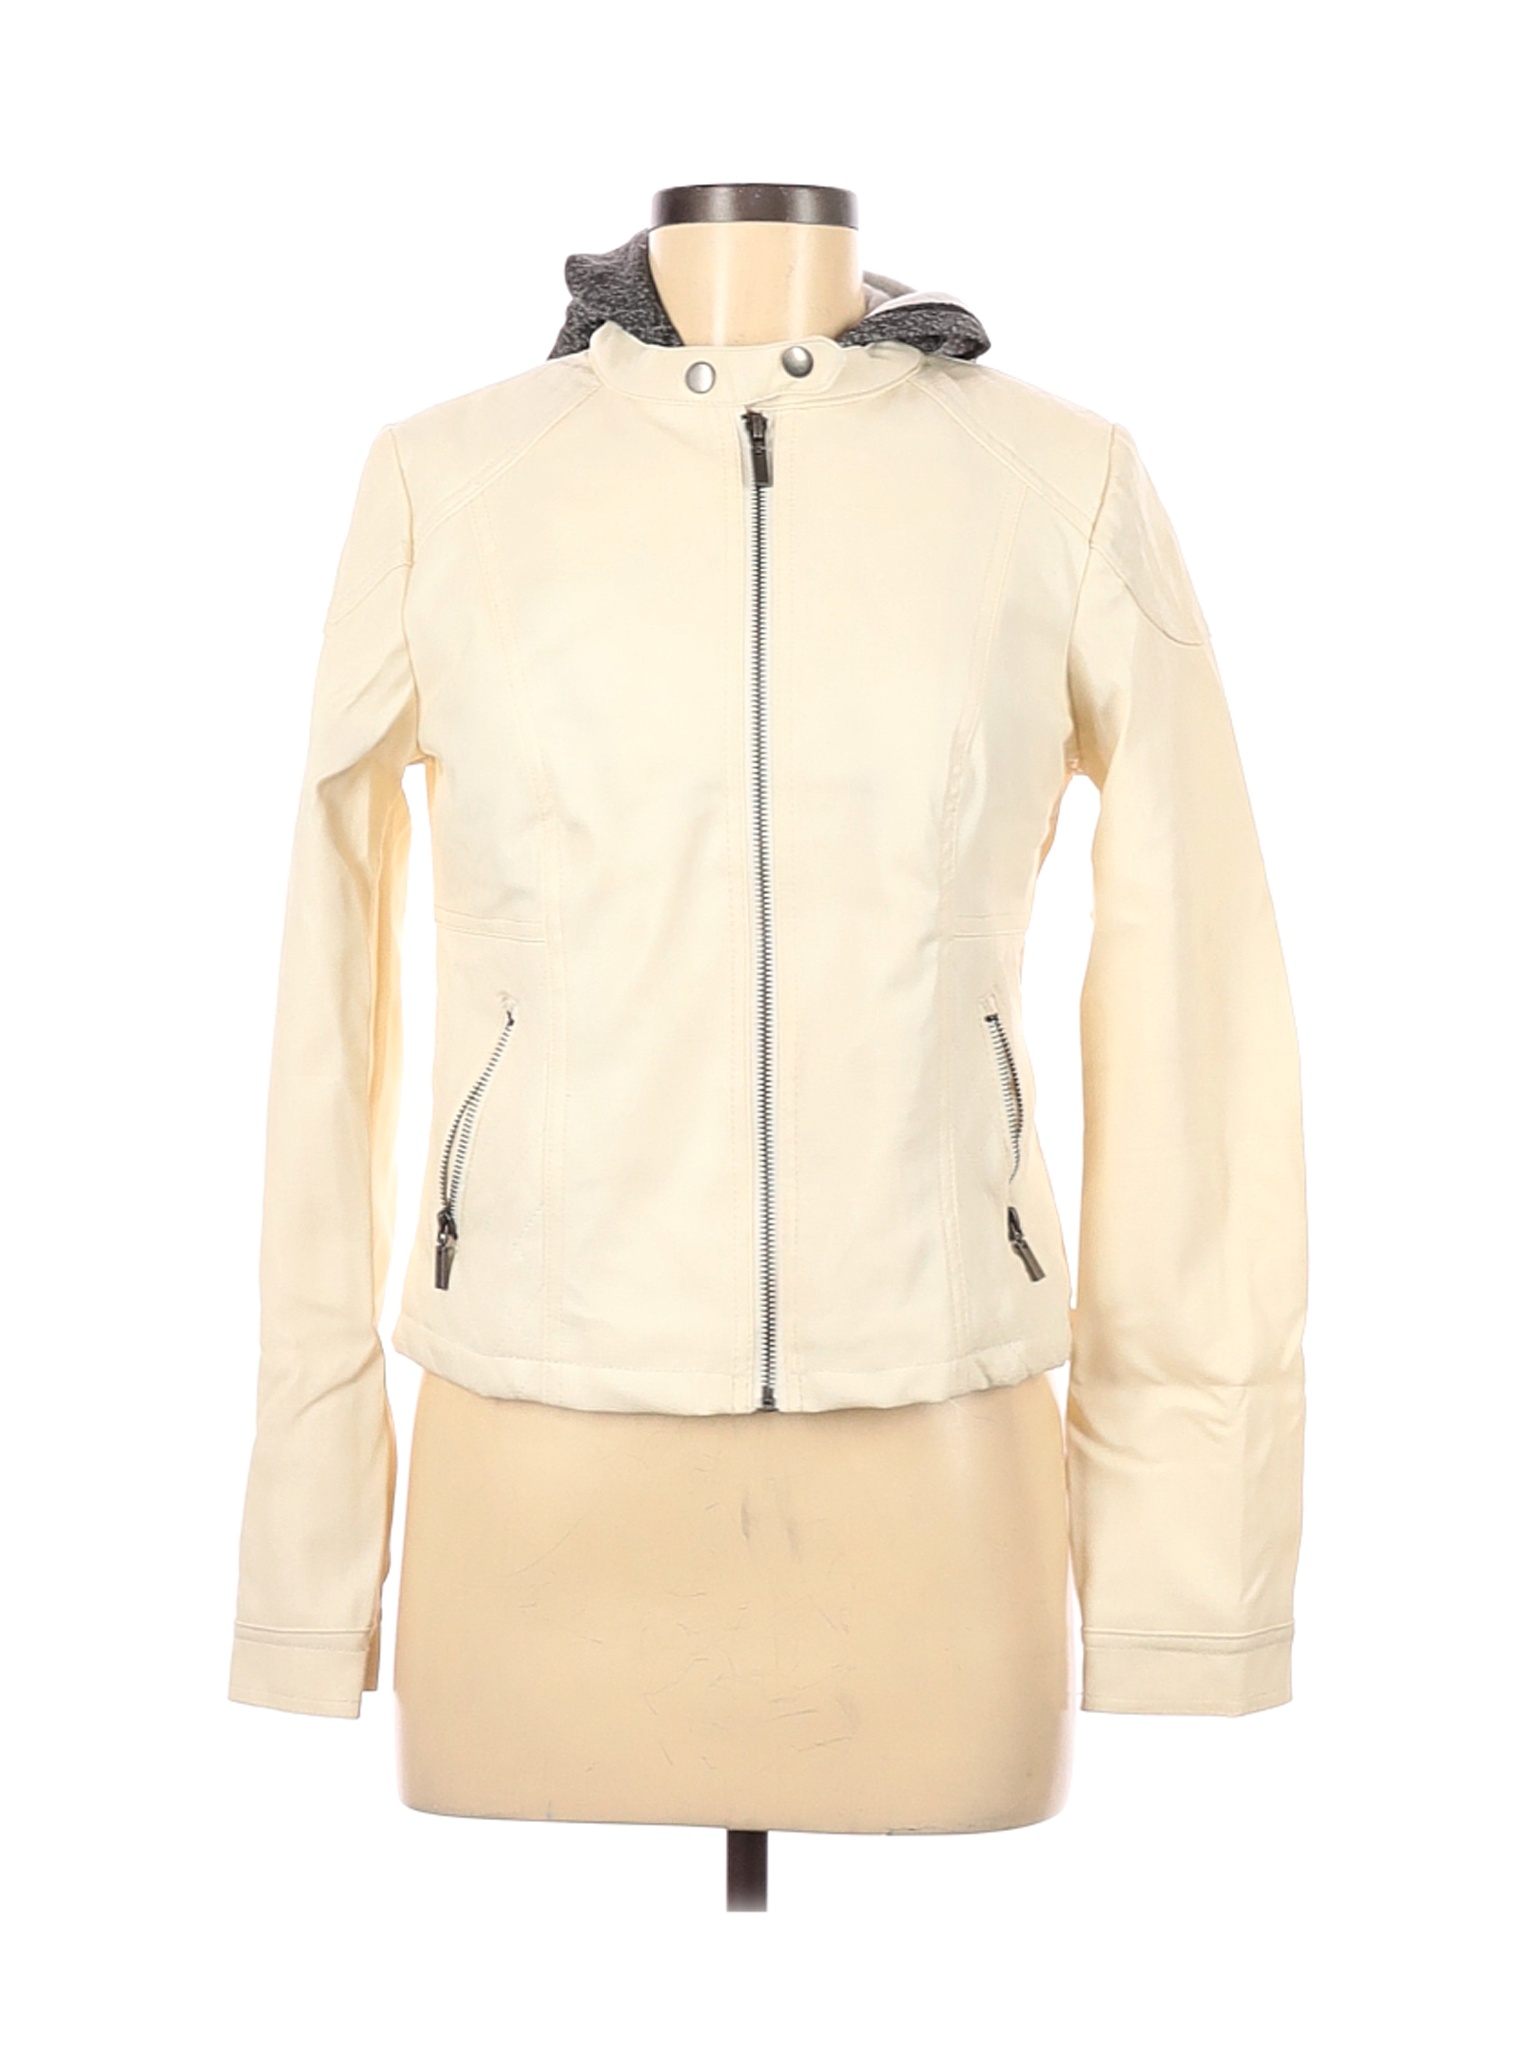 New Look Women Ivory Faux Leather Jacket M | eBay